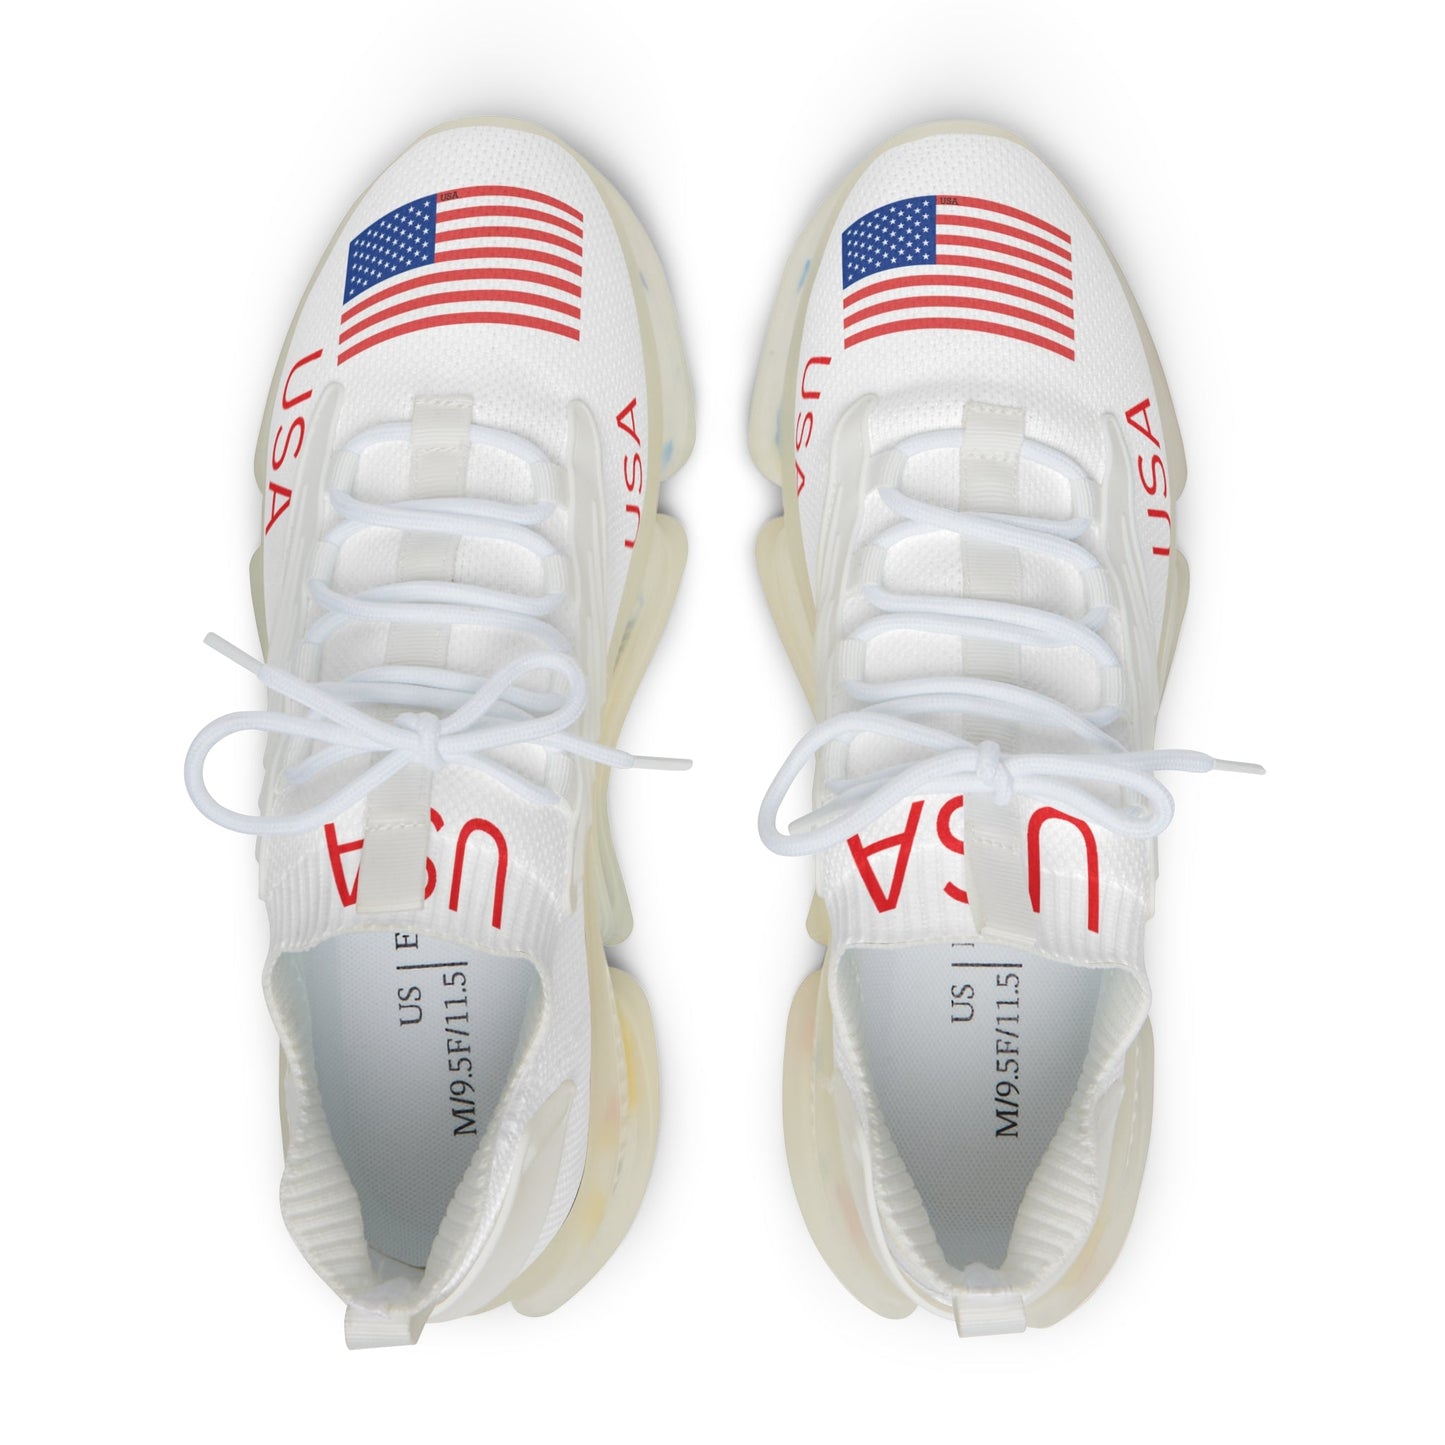 USA Men's Mesh Sneakers